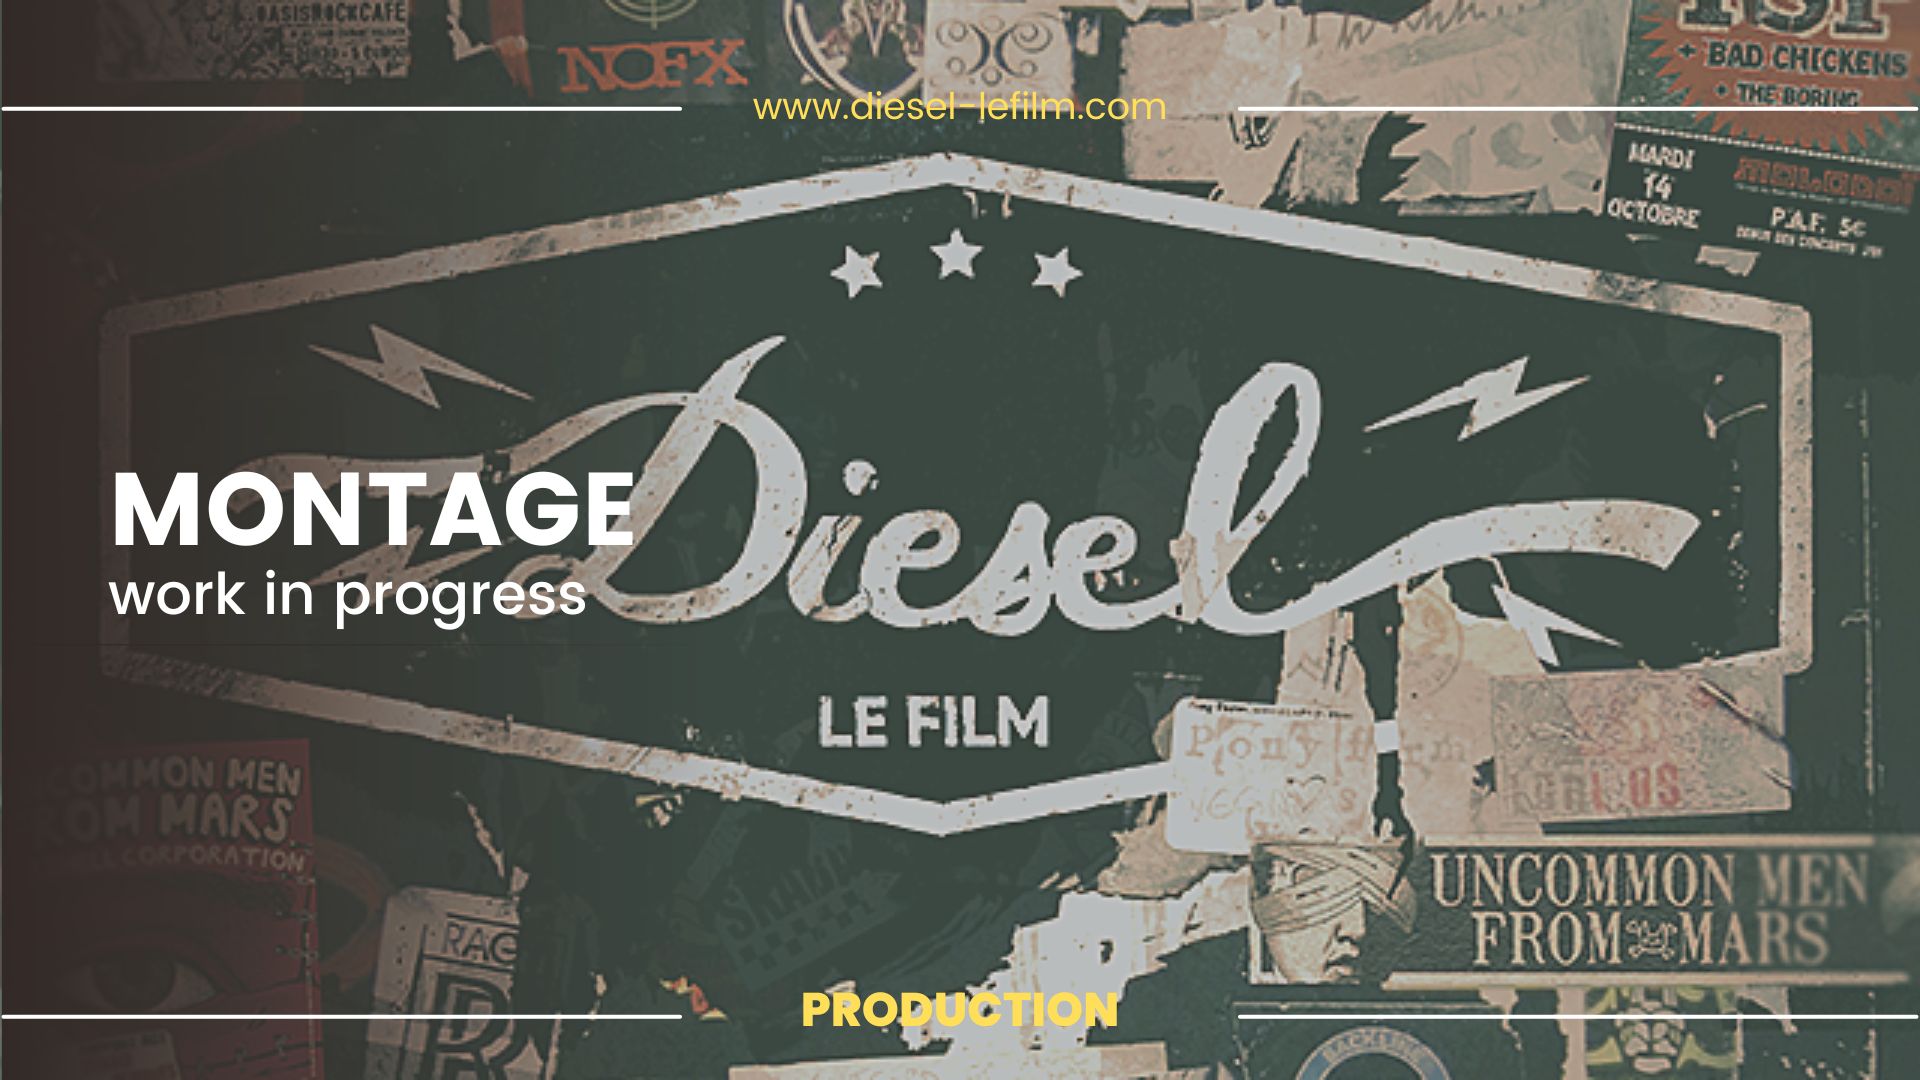 Diesel : Un film de David Basso, filmé sur 20 ans.